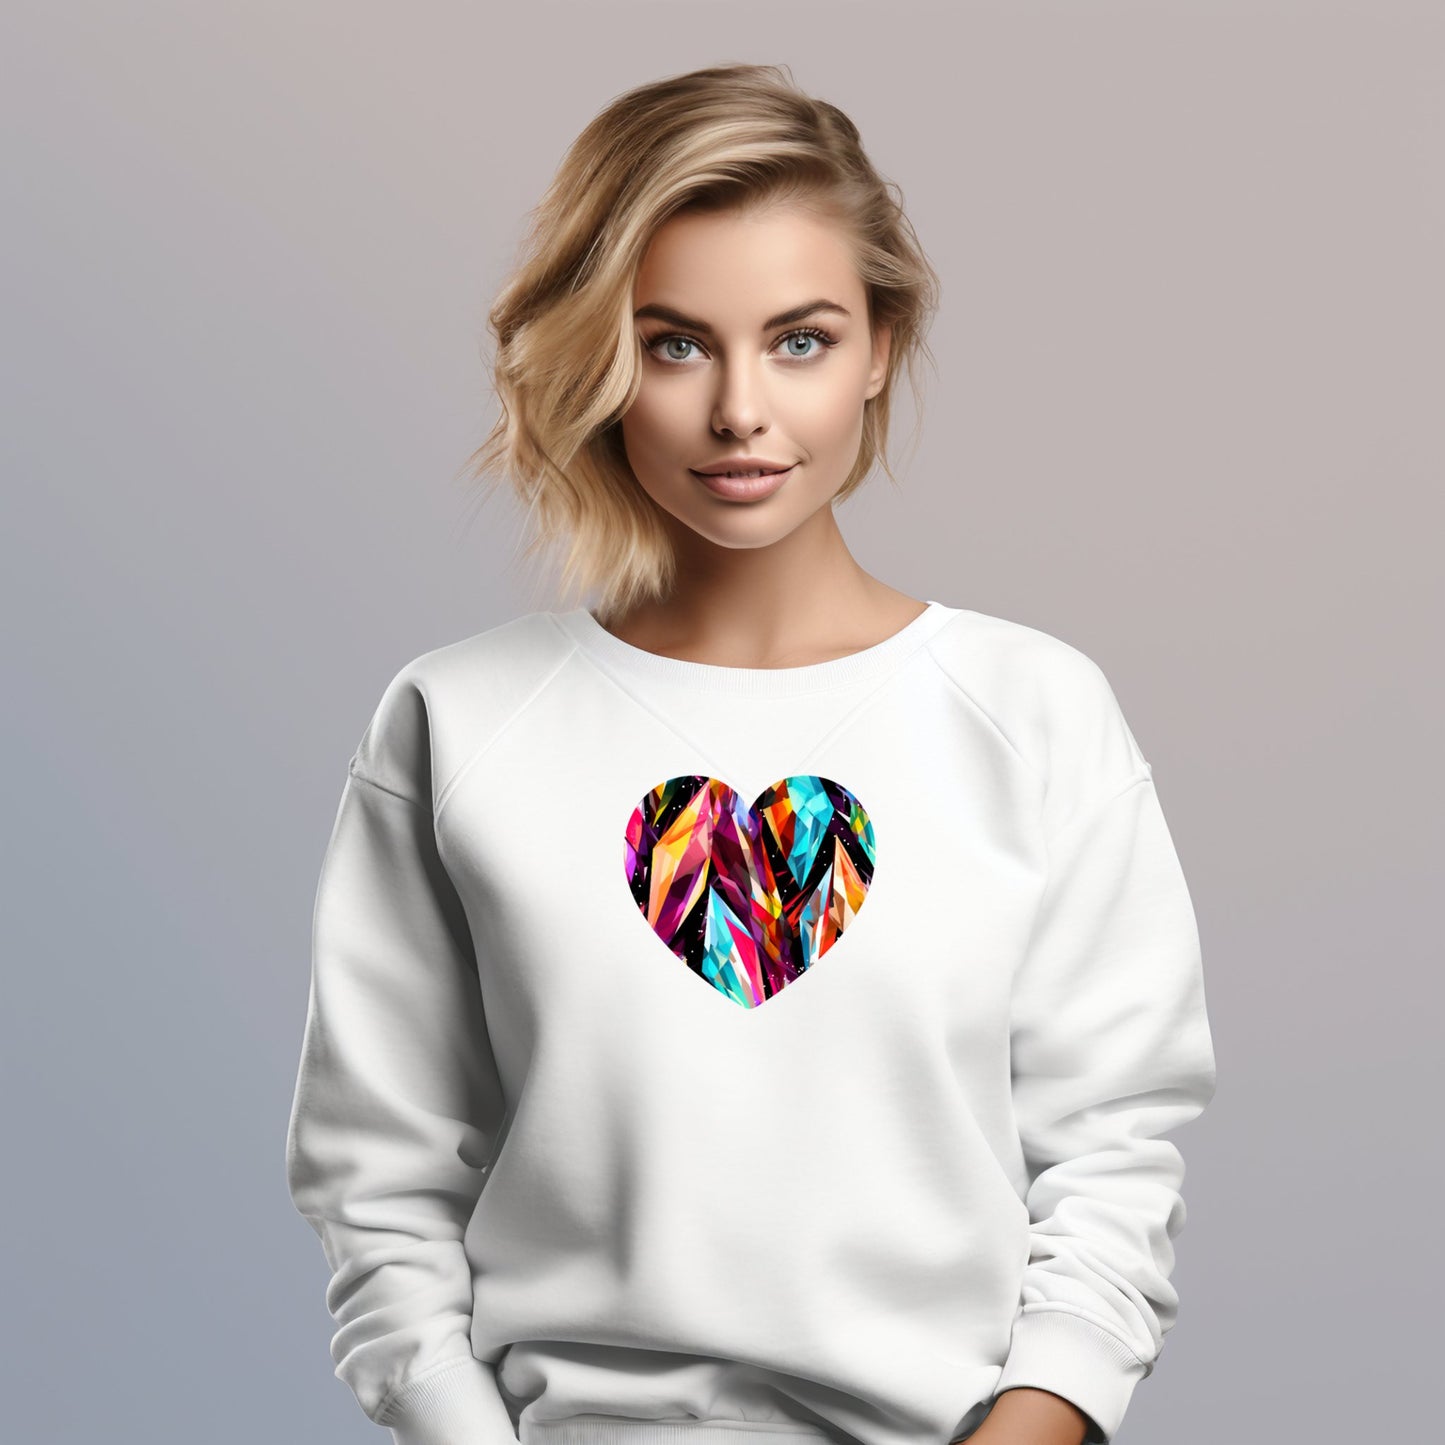 Džemperis "Shard Hearth" su spalvingais simboliniais raštais širdies formoje, sukurtas Designedbyme.lt. Minkštas ir jaukus audinys puikiai tinka dovanai draugei ar gimtadienio dovanai moteriai. Užrašai ant marškinėlių, spauda ant džemperių, praktiškos ir ypatingos dovanos moterims internetu. Visi produktai, Moteriški džemperiai